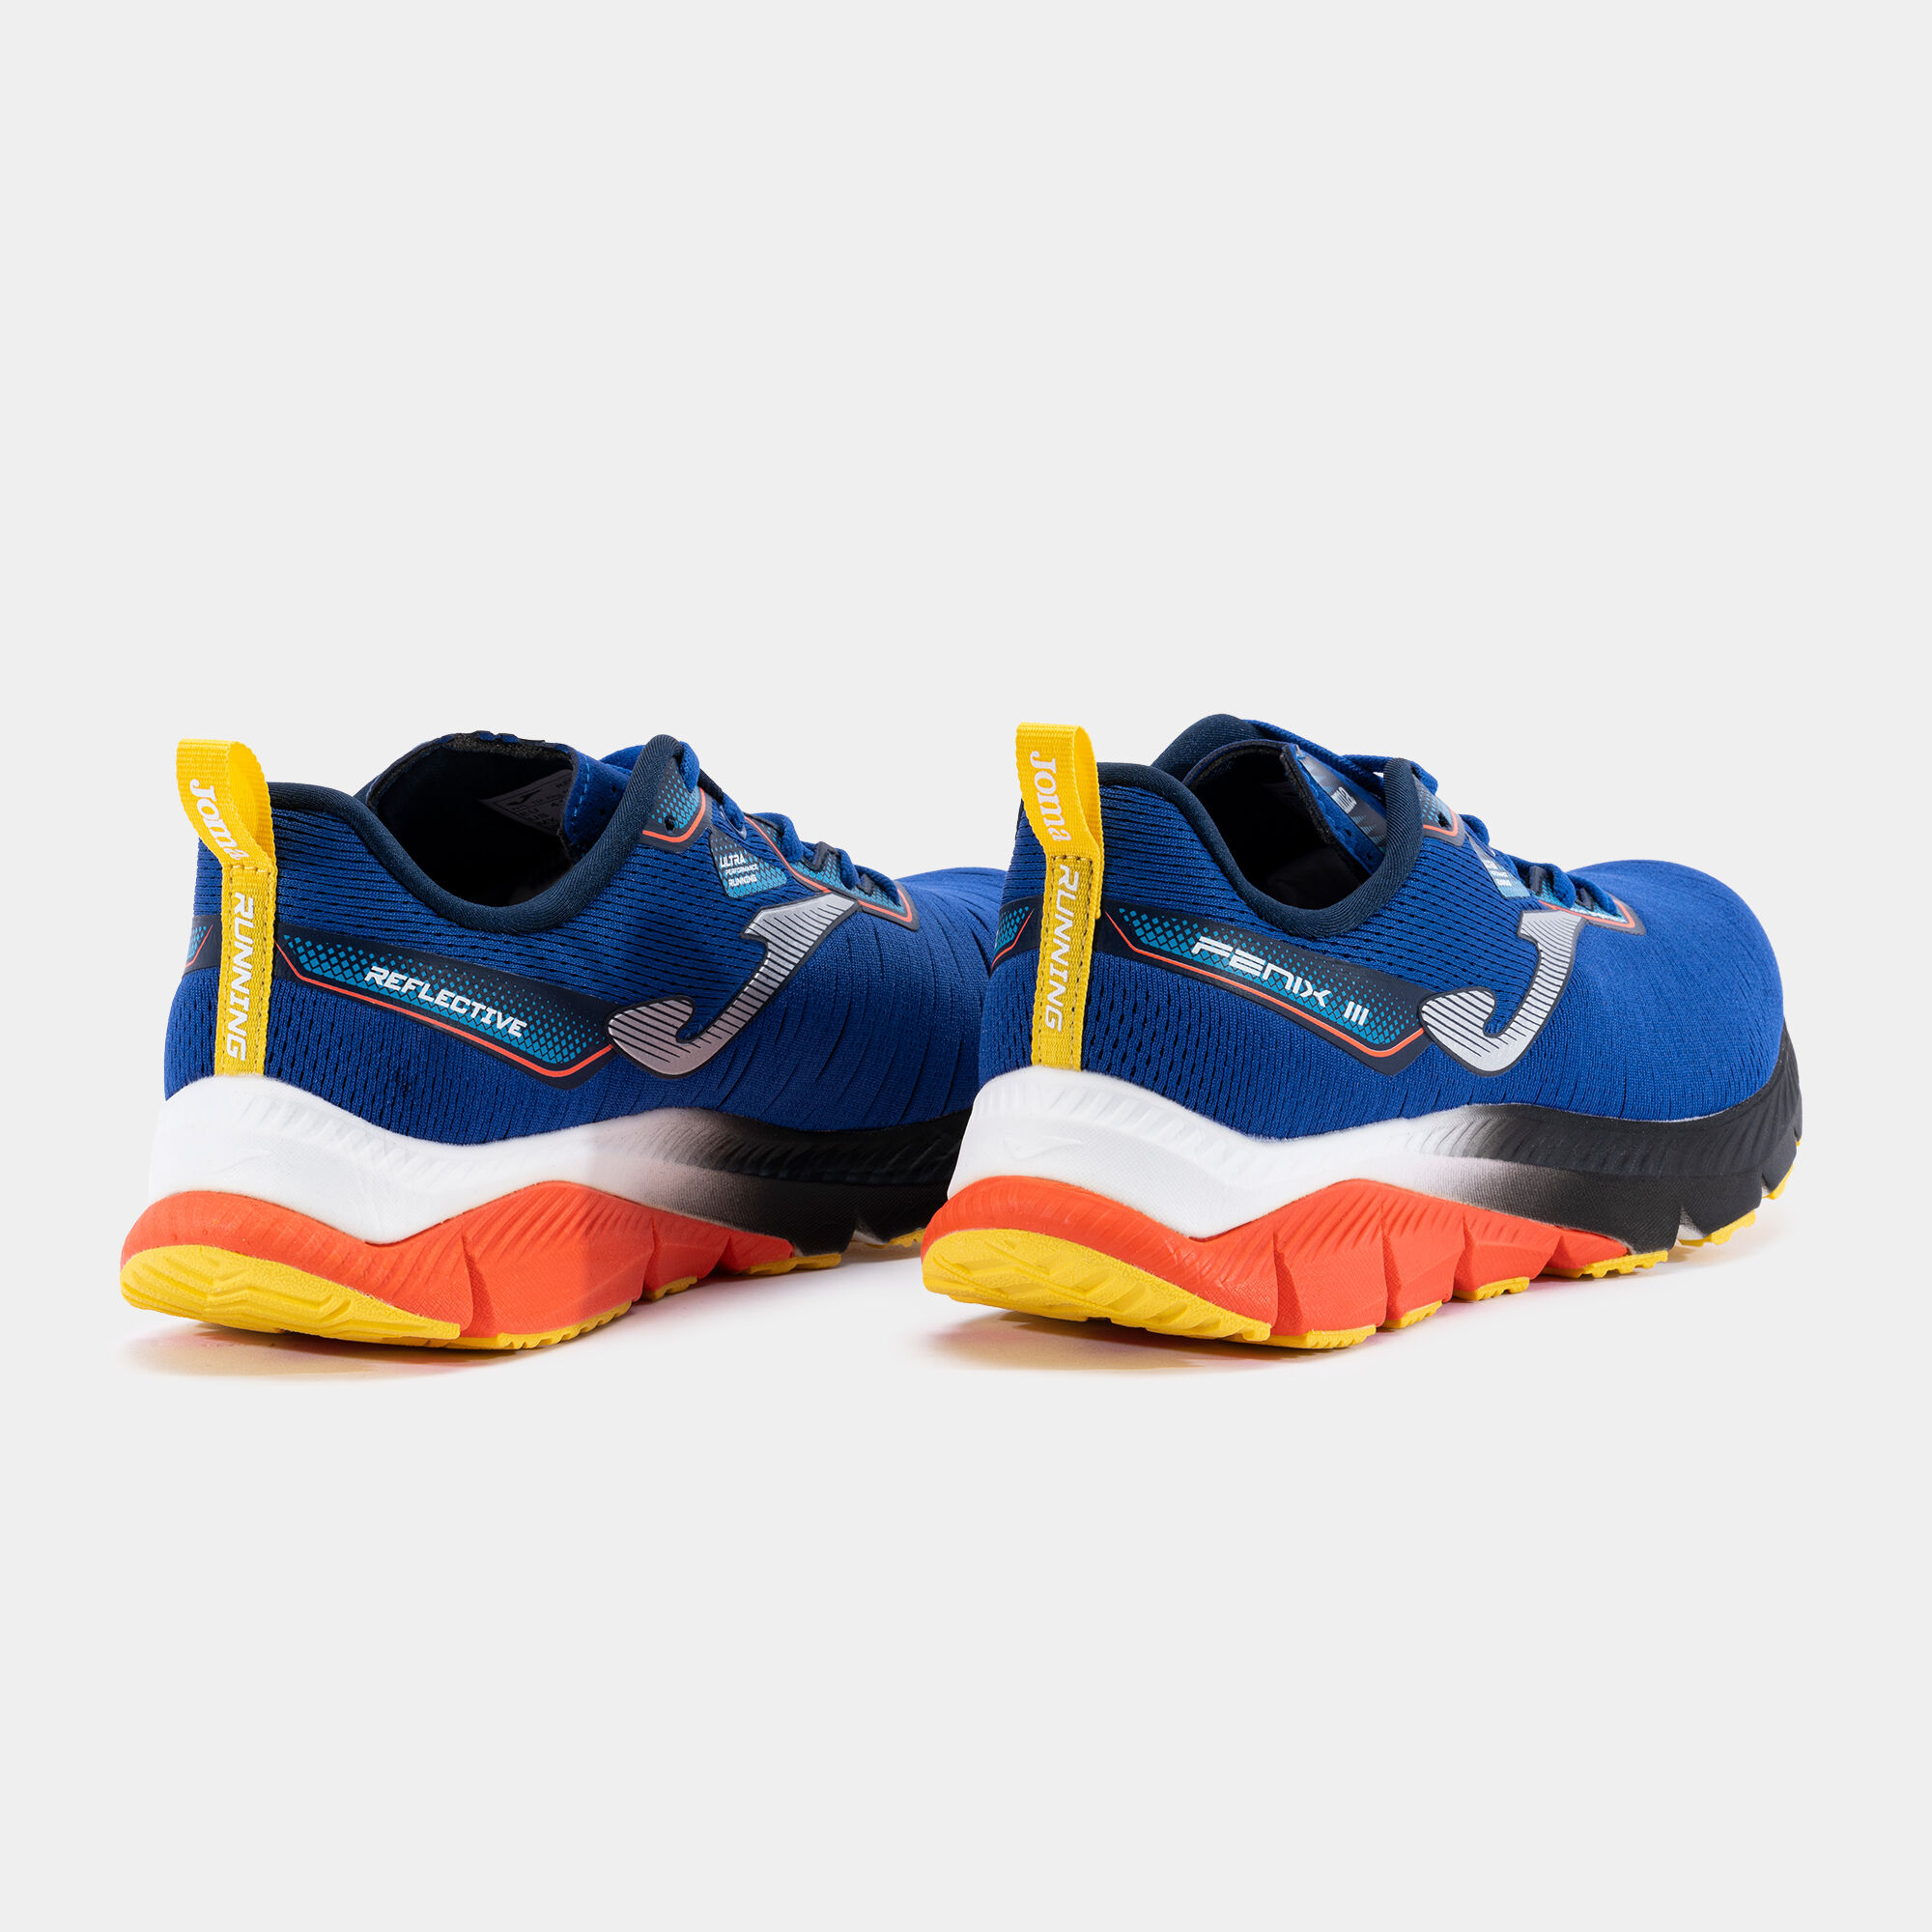 Zapatillas de running para hombre - Joma Fenix II 2108 Naranja - RFENIS2108, Ferrer Sport